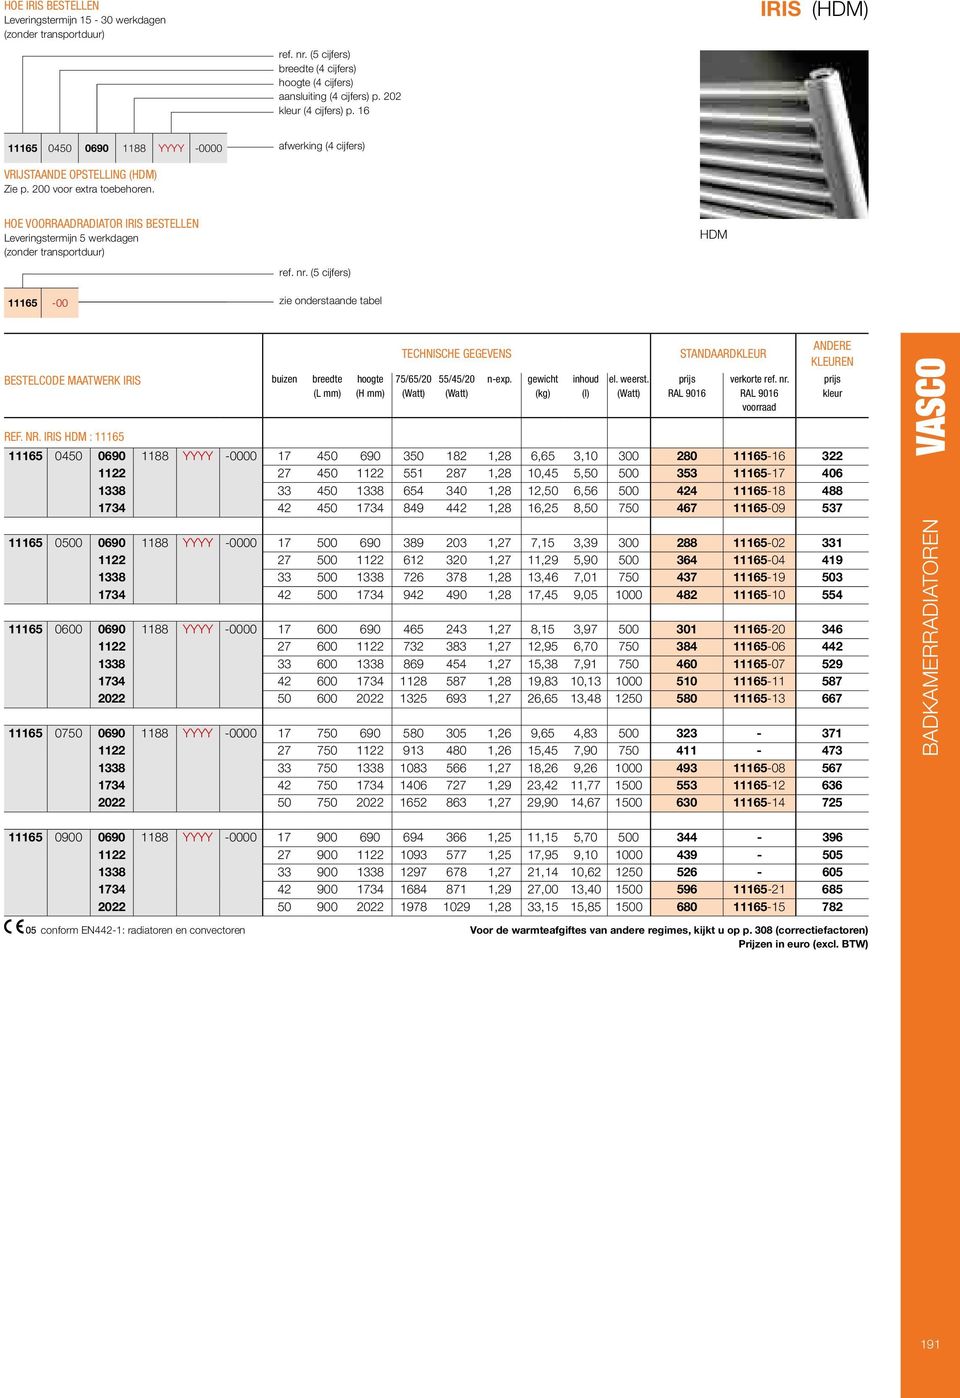 ( cĳ fers ) 1116-00 zie onderstaande tabel BESTECODE MAATWEK IIS buizen breedte ( mm ) hoogte (H mm ) TECHNISCHE GEGEVENS 7/6/20 //20 n-exp. gewicht (kg ) inhoud (l ) el. weerst.